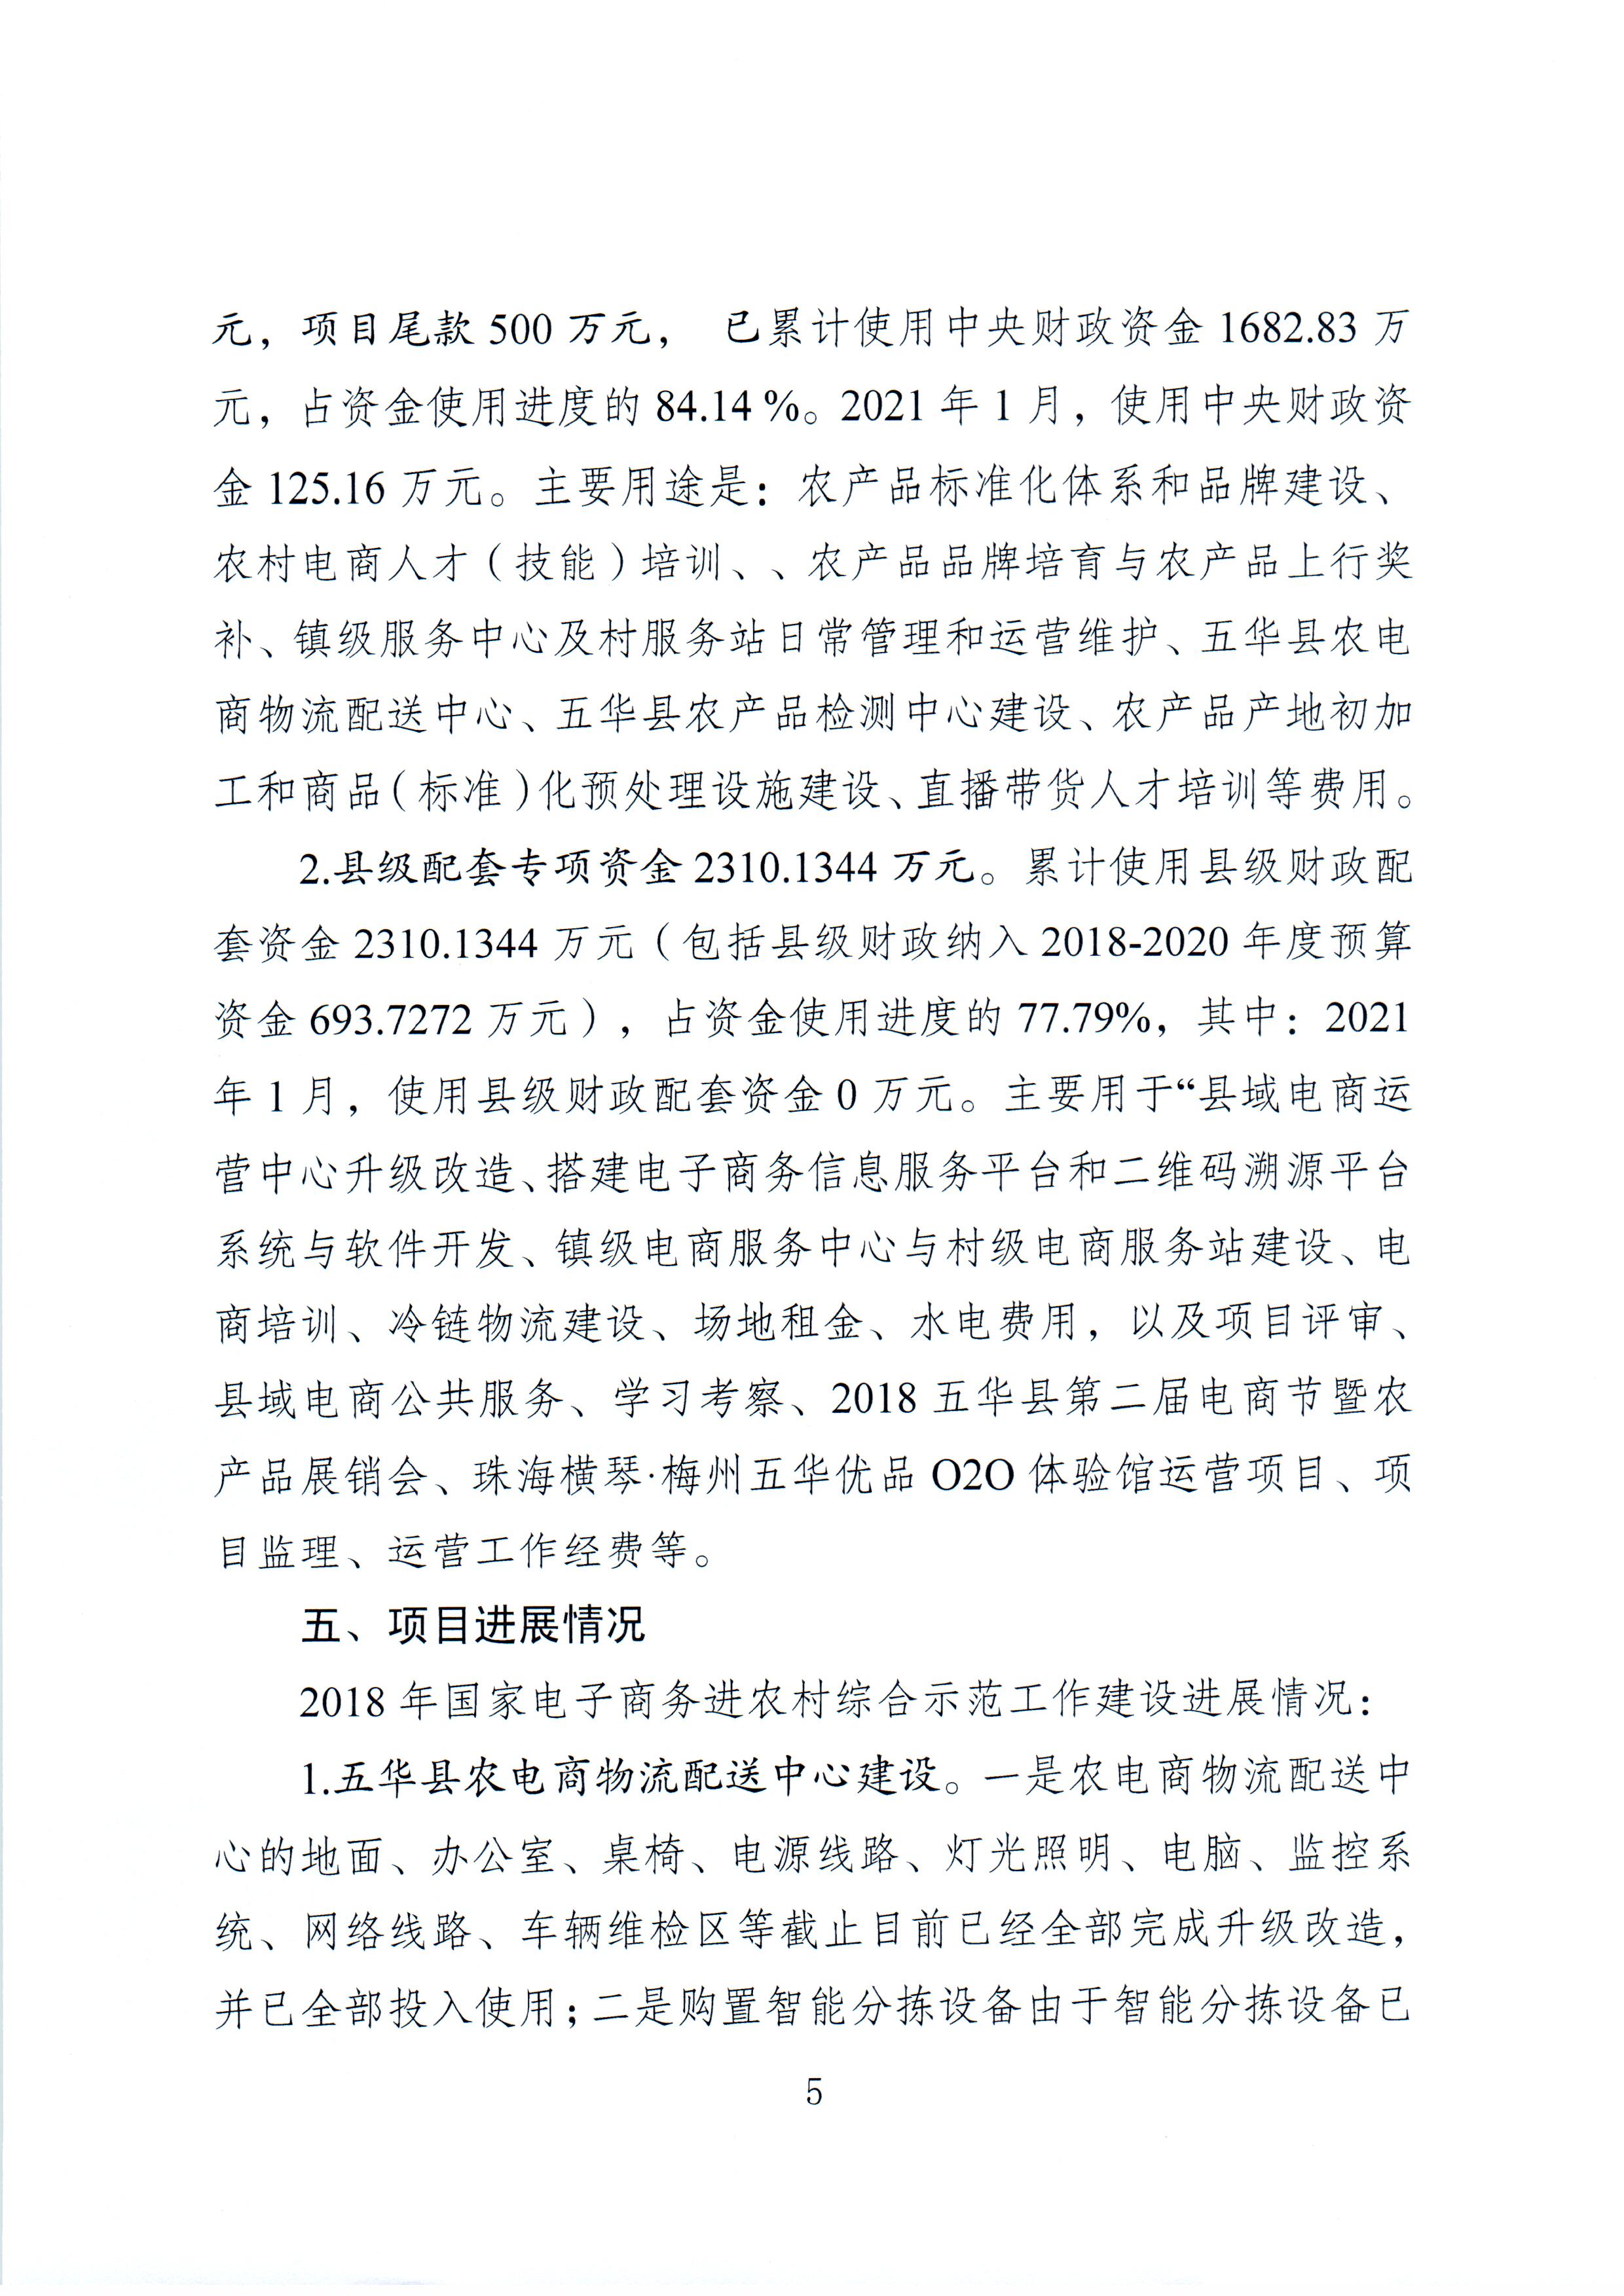 1、五华县电子商务进农村综合示范项目2021年1月工作推进情况（领导小组办公室）--（2021年2月3日确定版） (5).jpg